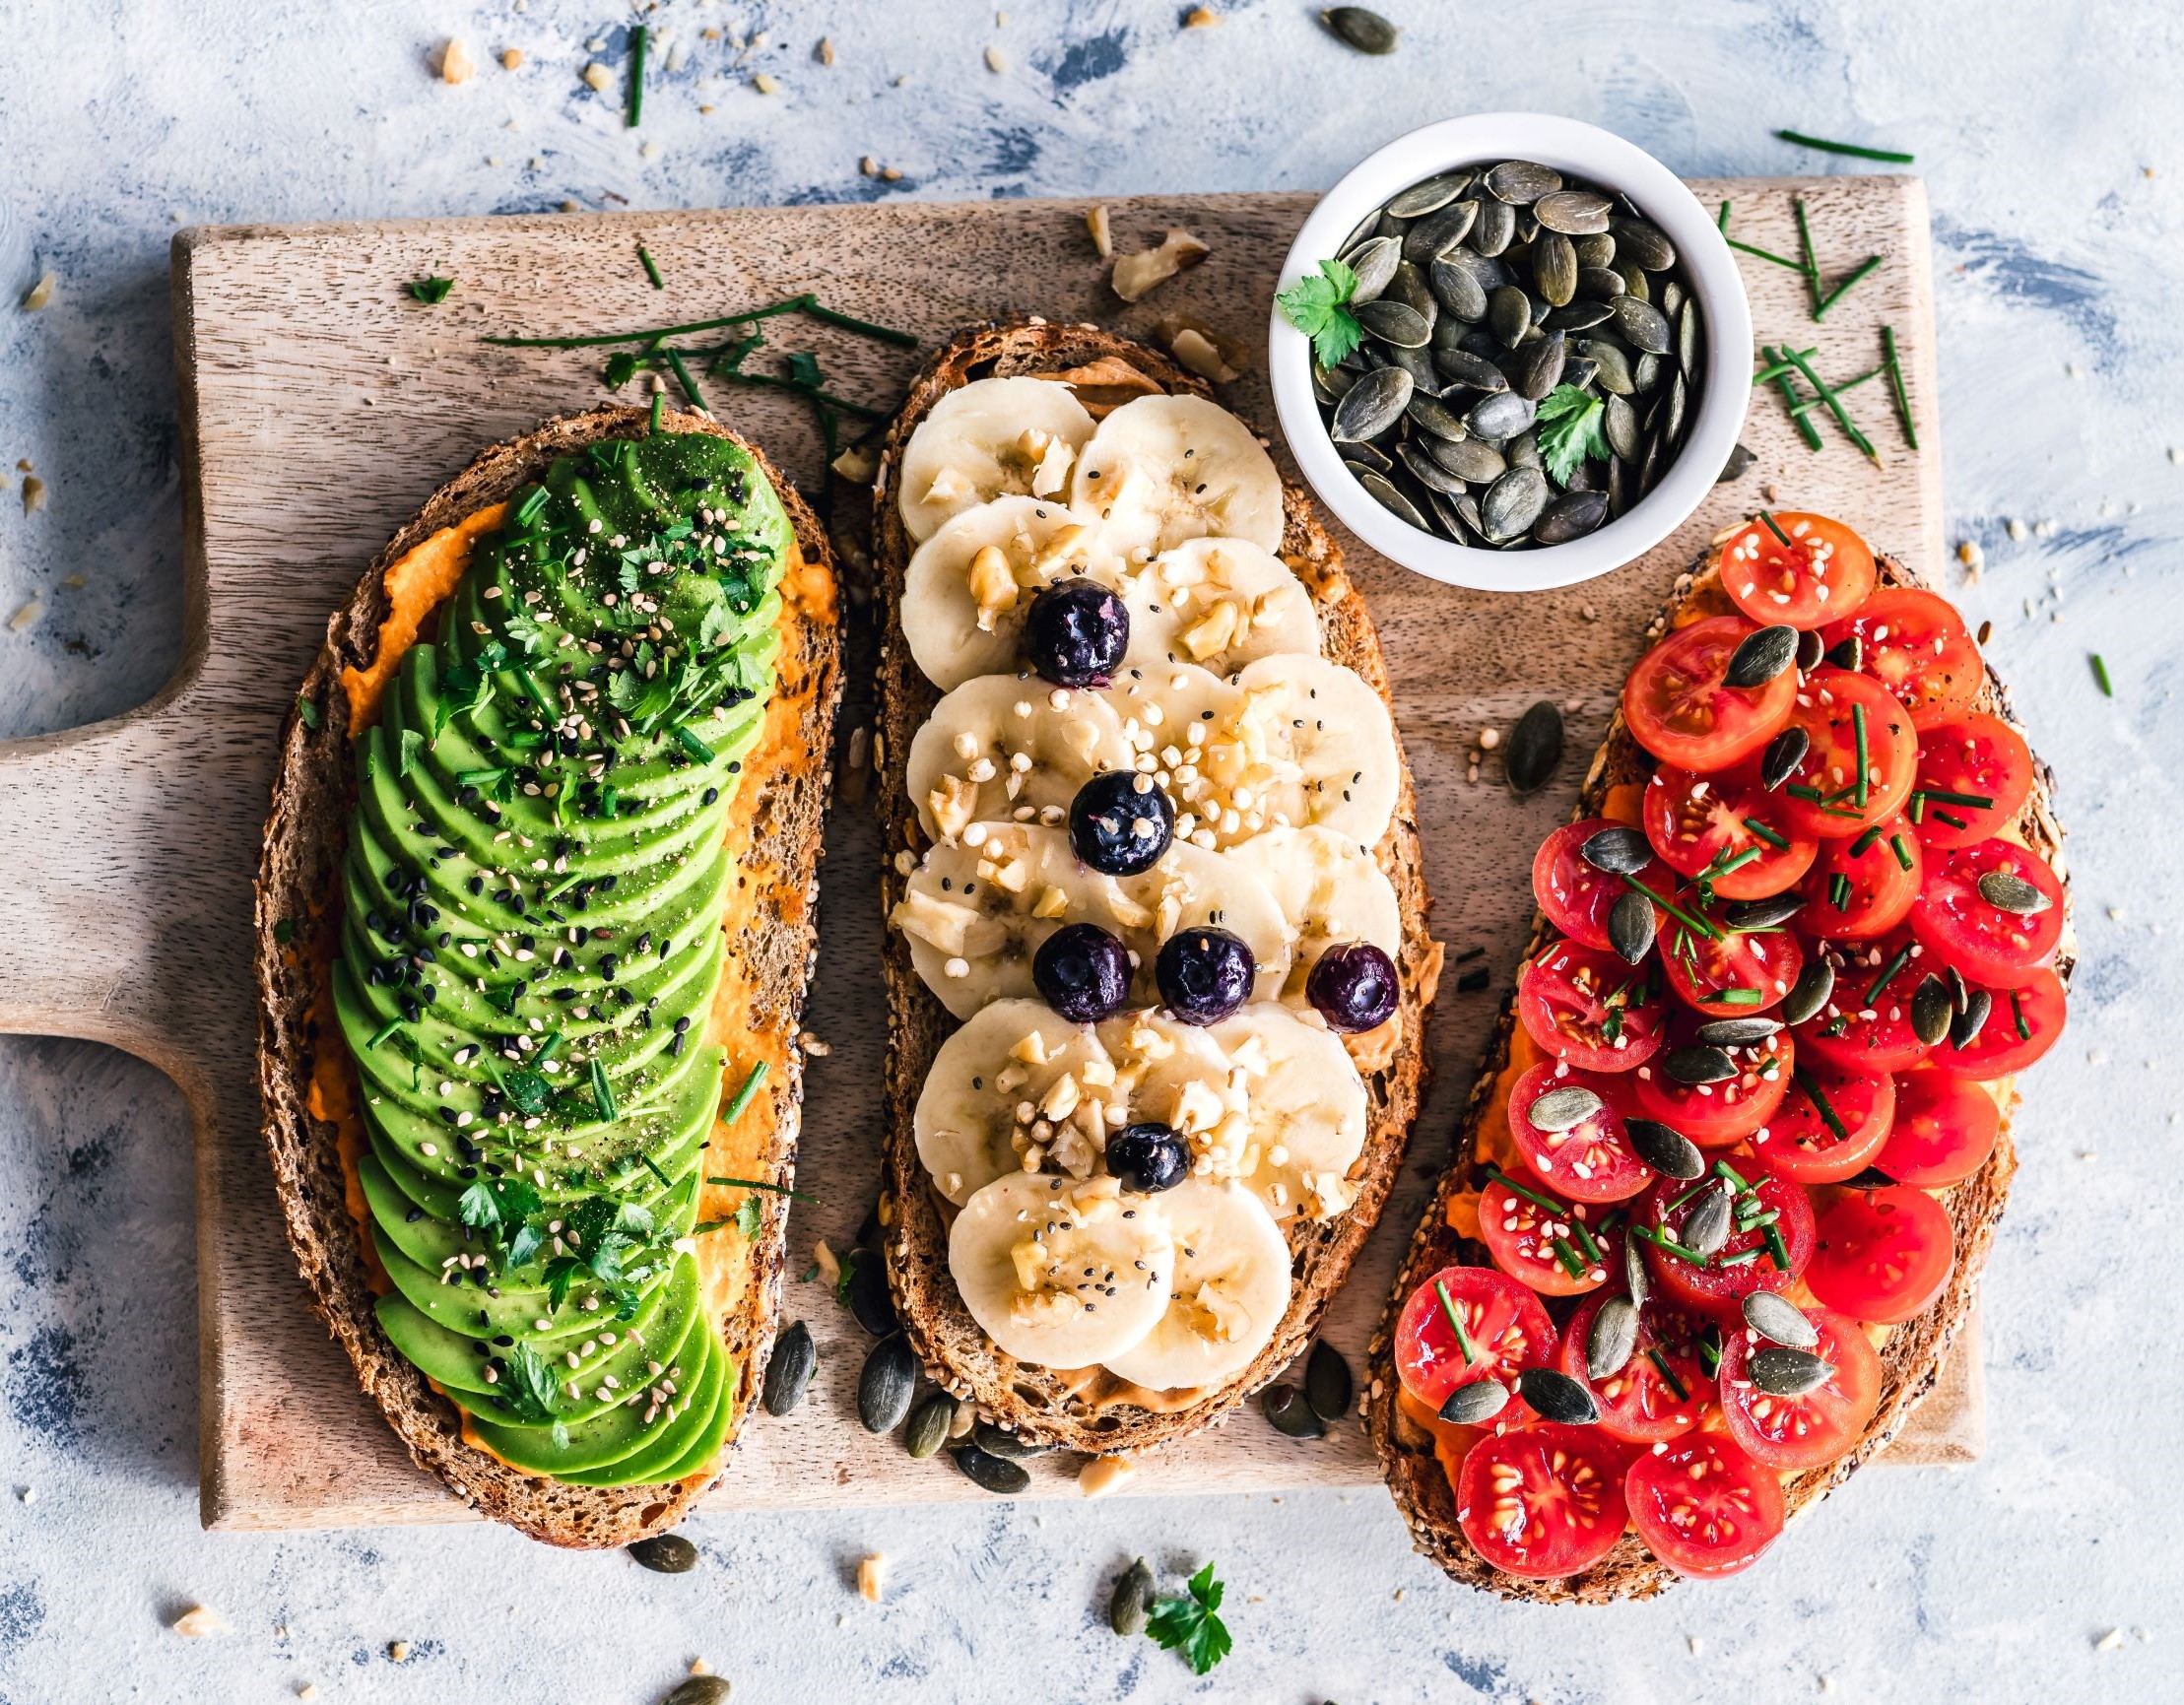 Γιατί και πώς να κάνεις τα πρώτα βήματα στη vegan διατροφή: Βασικά tips και συνταγές από μία εξειδικευμένη Διατροφολόγο